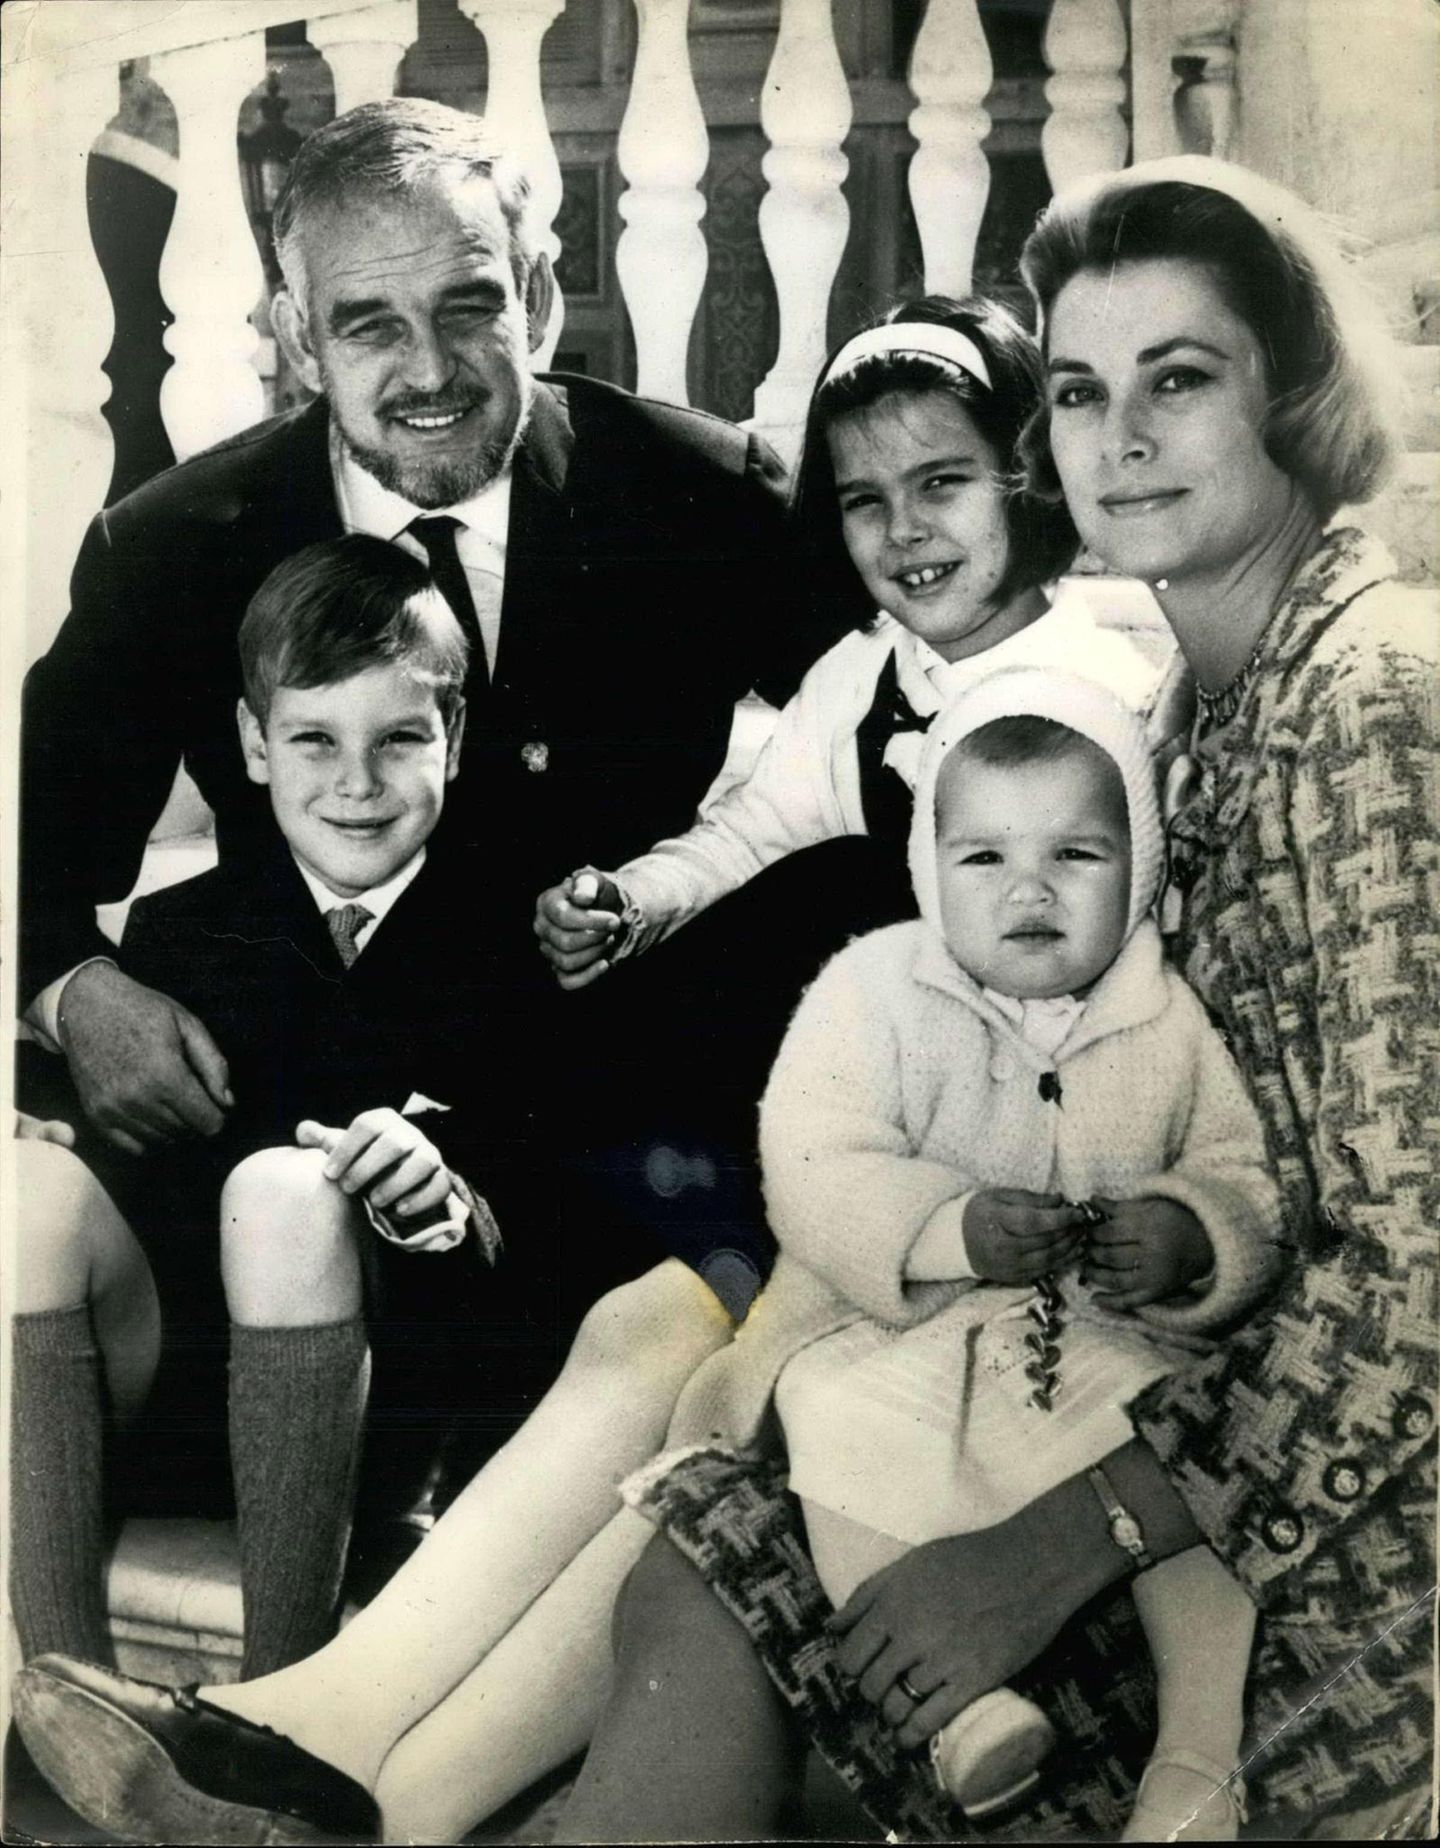 Die Fürstenfamilie von Monaco in glücklichen Tagen: Fürst Rainier und Gracia Patricia feiern 1966 ihren 10. Hochzeitstag mit ihren Kindern Albert, Caroline und Stéphanie.